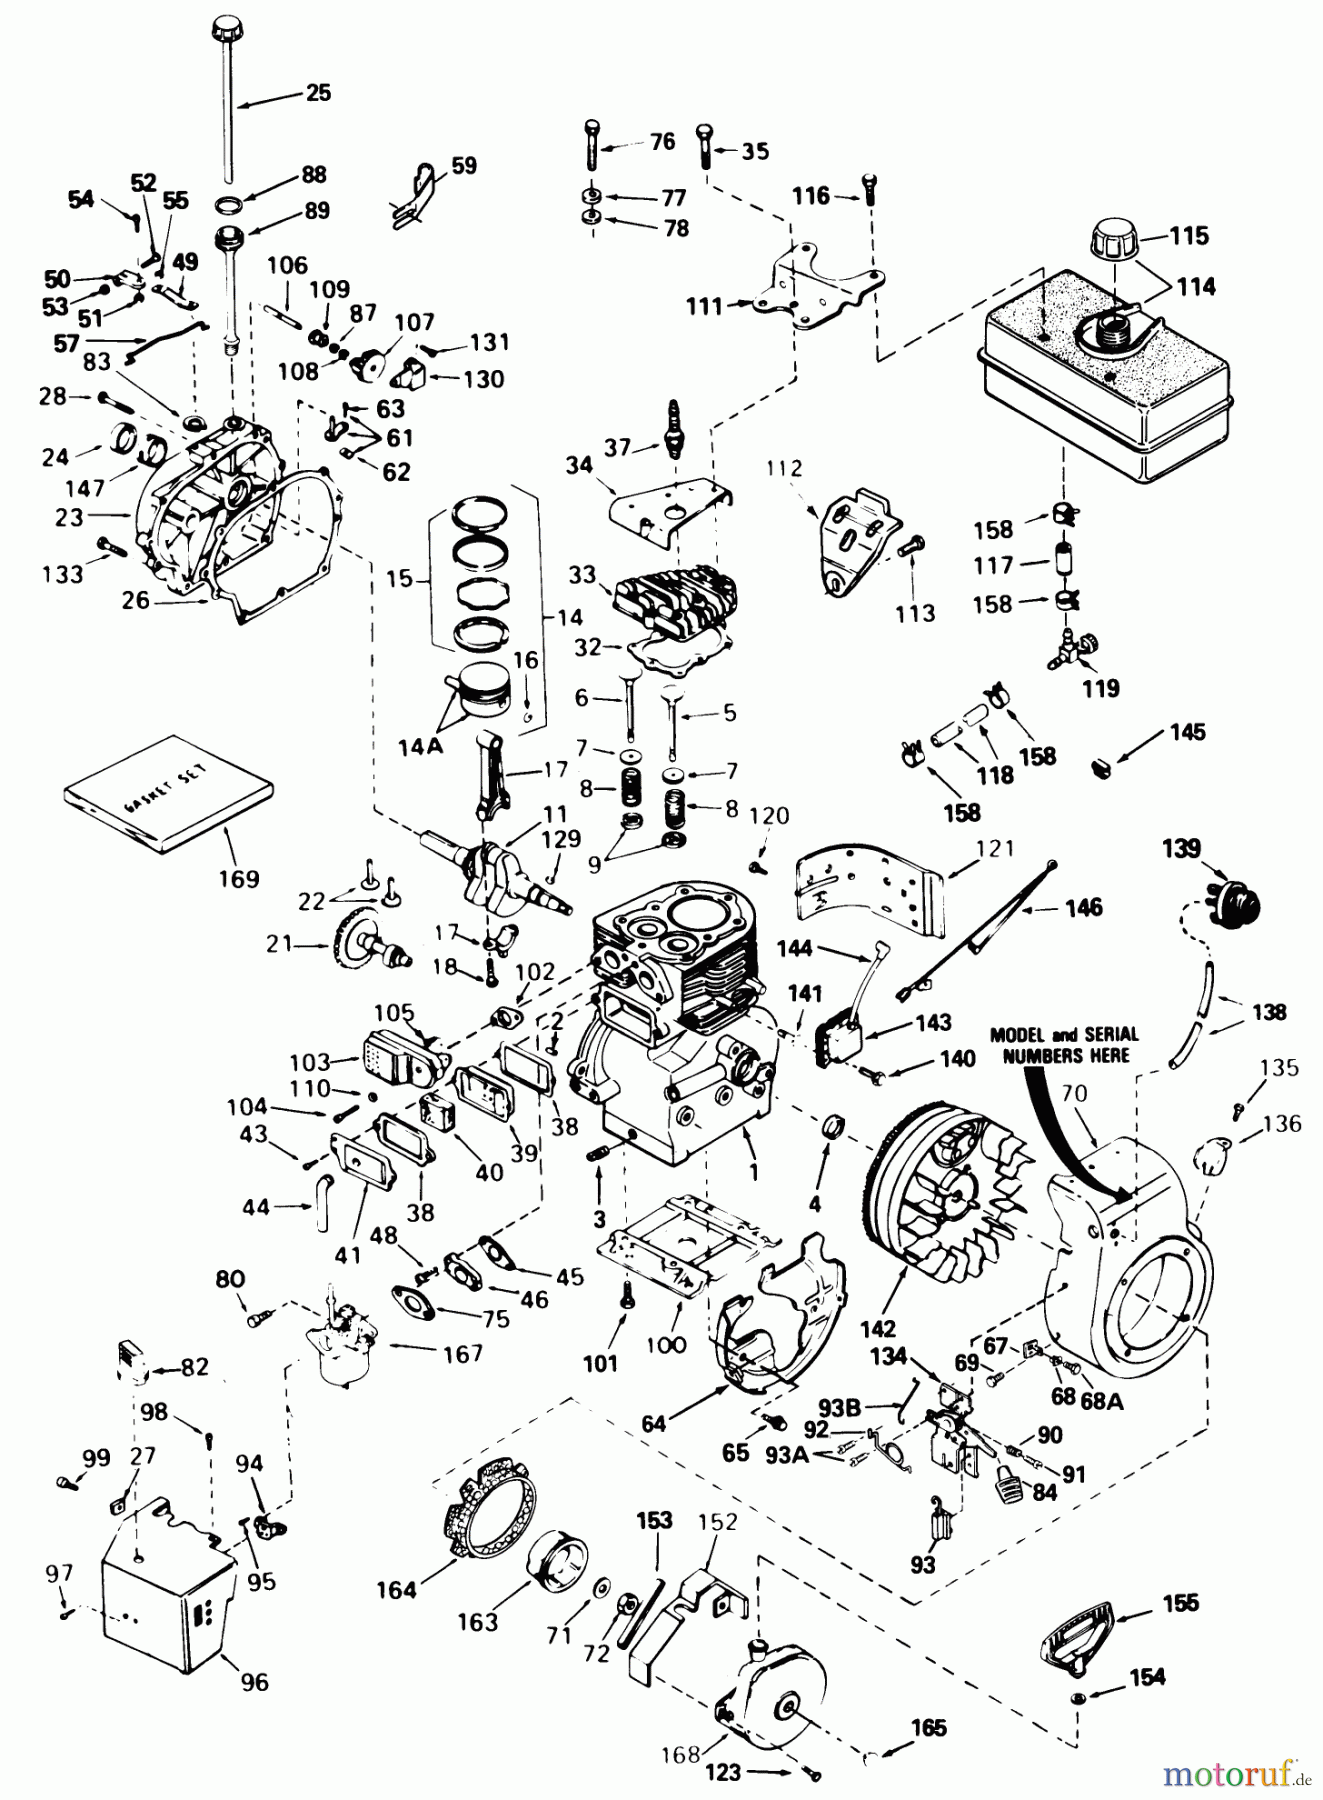  Toro Neu Snow Blowers/Snow Throwers Seite 1 38513 (624) - Toro 624 Power Shift Snowthrower, 1989 (9000001-9999999) ENGINE TECUMSEH MODEL NO. H60-75504W